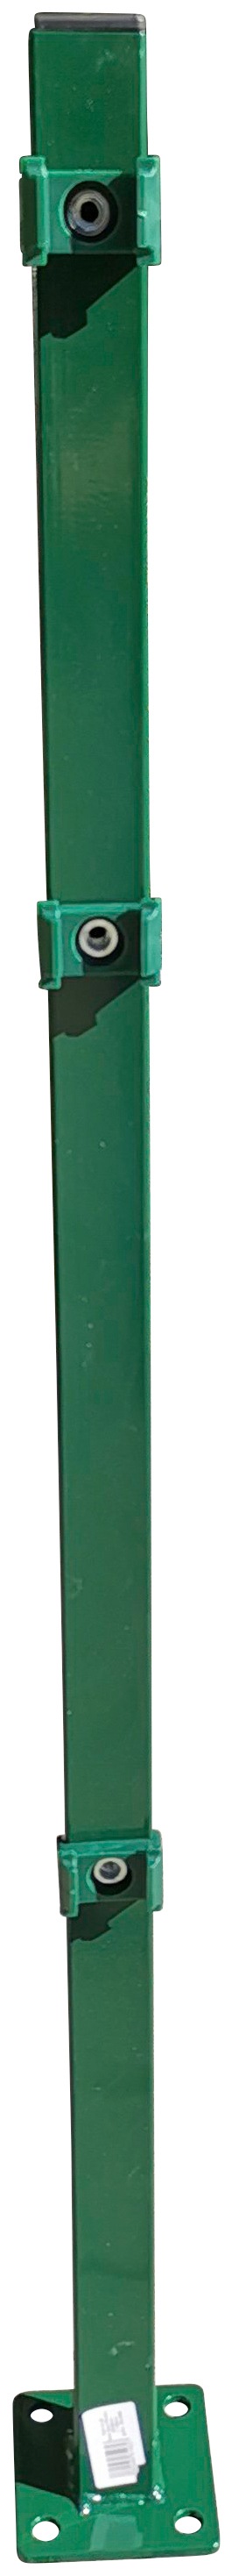 Peddy Shield Zaunpfosten, 110 cm Höhe, für Ein- und Doppelstabmatten